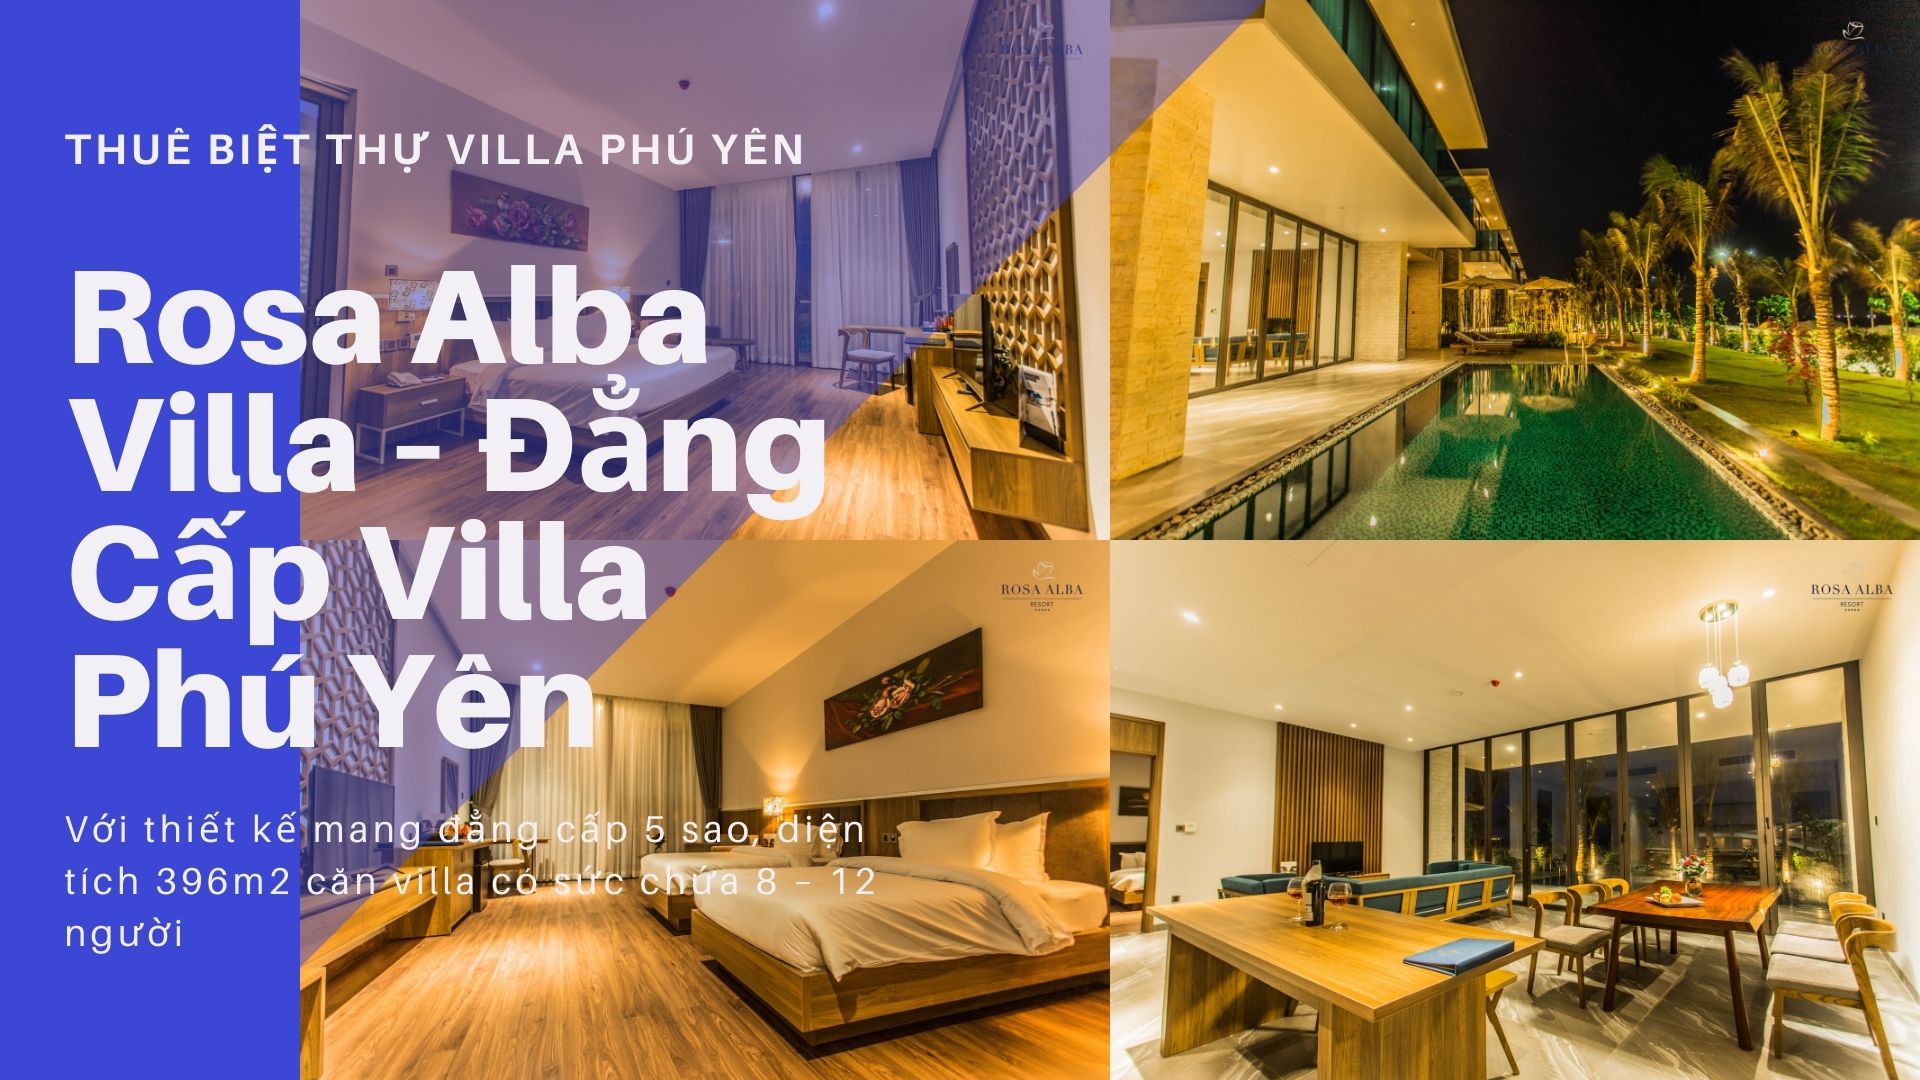 Top 10 Biệt thự villa Phú Yên giá rẻ đẹp view biển gần trung tâm